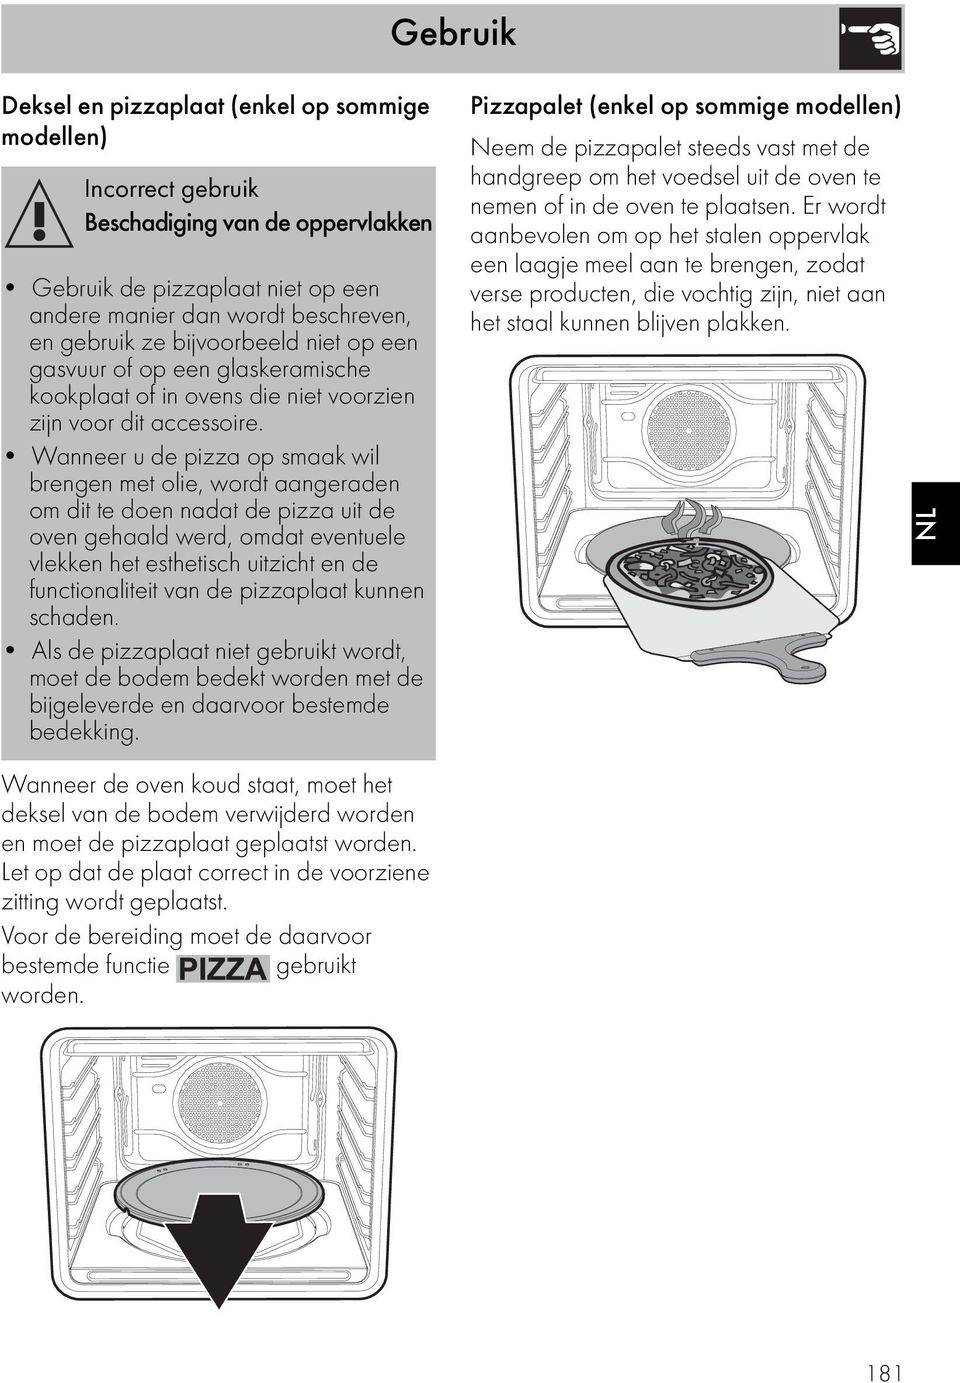 Wanneer u de pizza op smaak wil brengen met olie, wordt aangeraden om dit te doen nadat de pizza uit de oven gehaald werd, omdat eventuele vlekken het esthetisch uitzicht en de functionaliteit van de